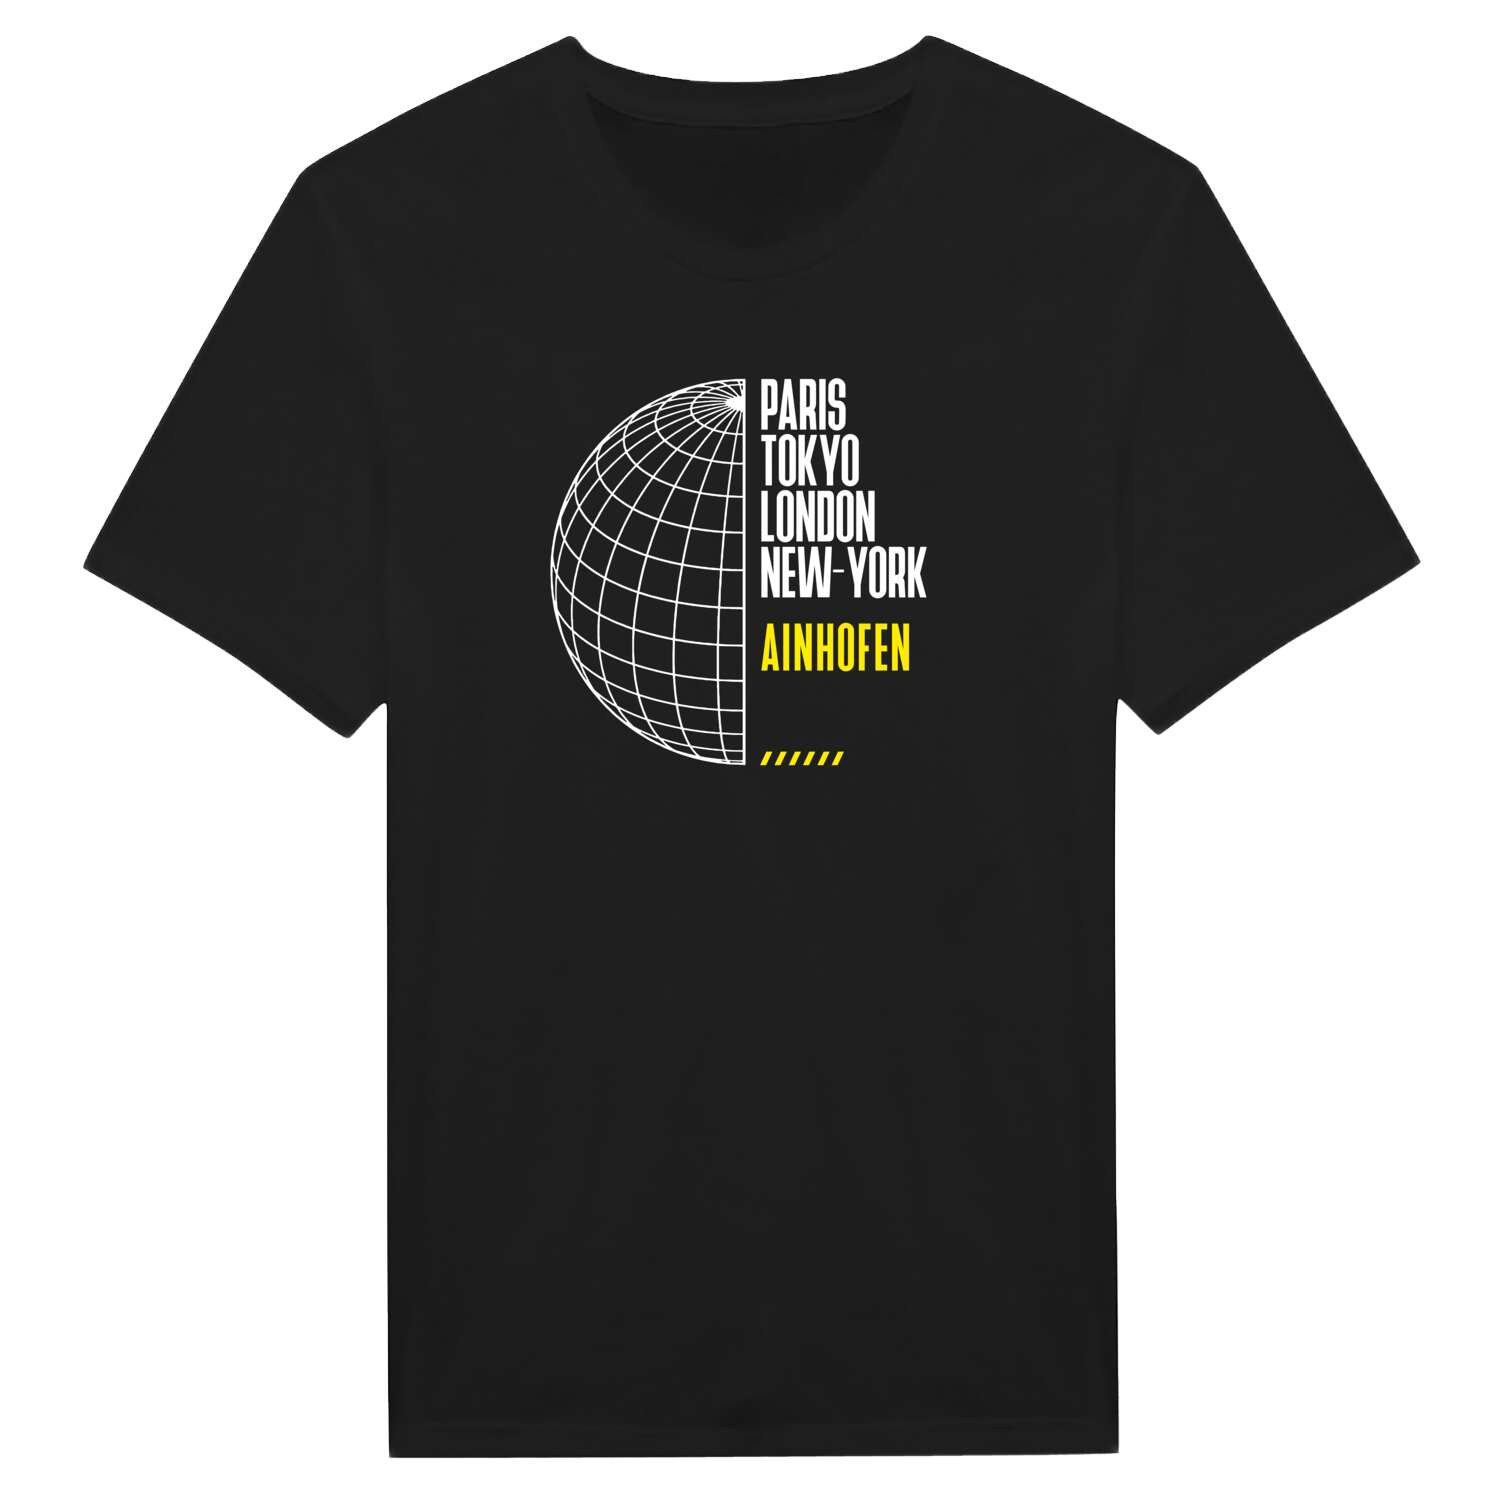 Ainhofen T-Shirt »Paris Tokyo London«